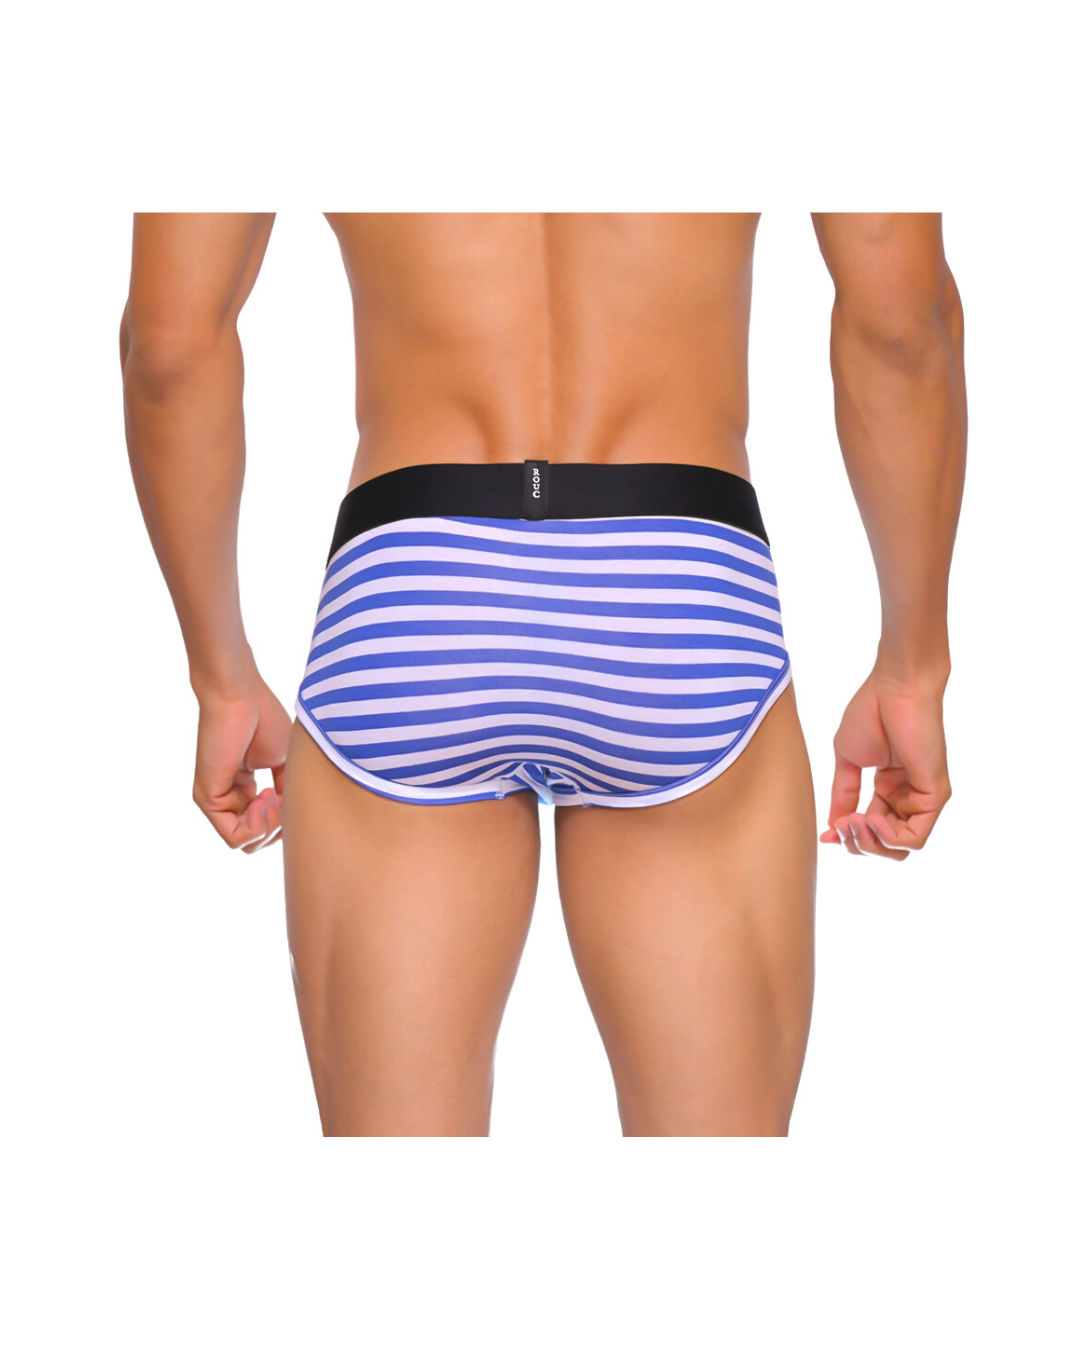 Men Underwear - BRIEFS - 2 Pack - Prints